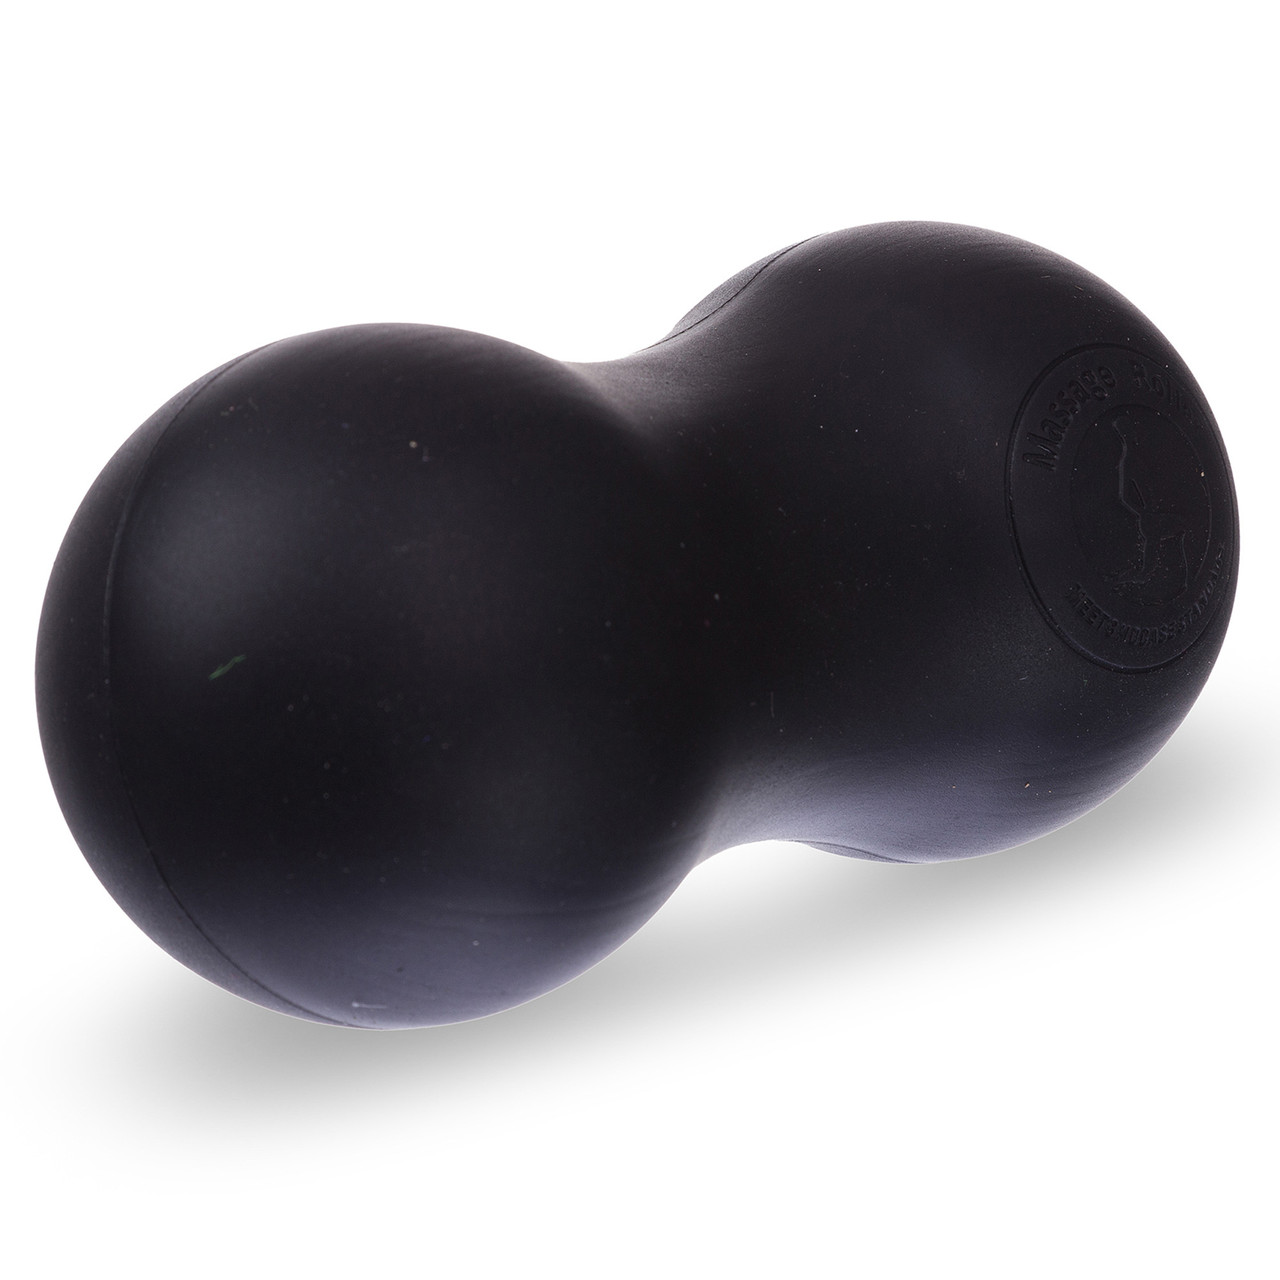 М'яч масажний подвійний DuoBall для самомасажу спини і м'язів, фітнесу, йоги (FI-7073)